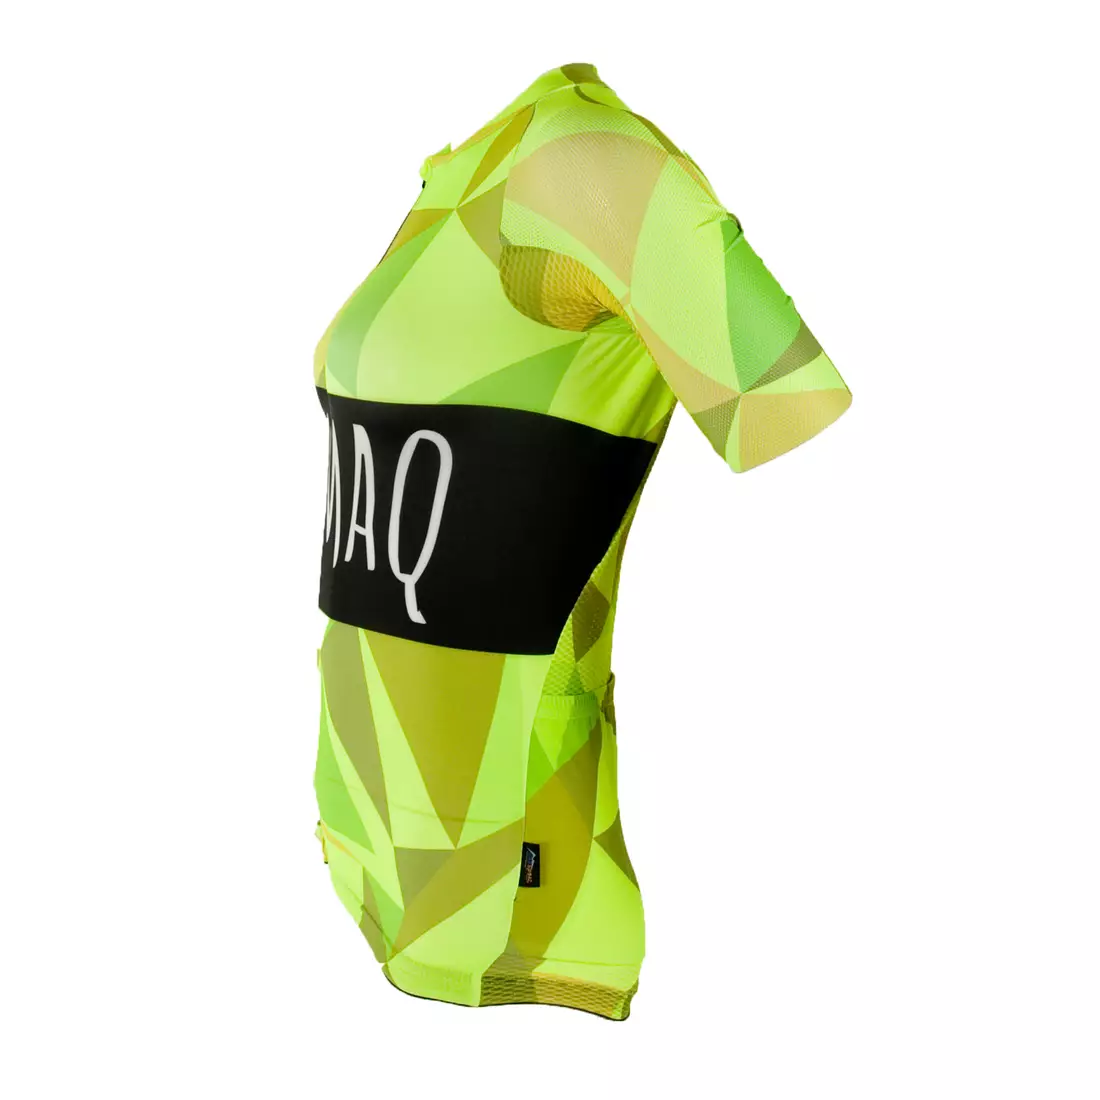 KAYMAQ RPS pánský cyklistický dres s fluorem